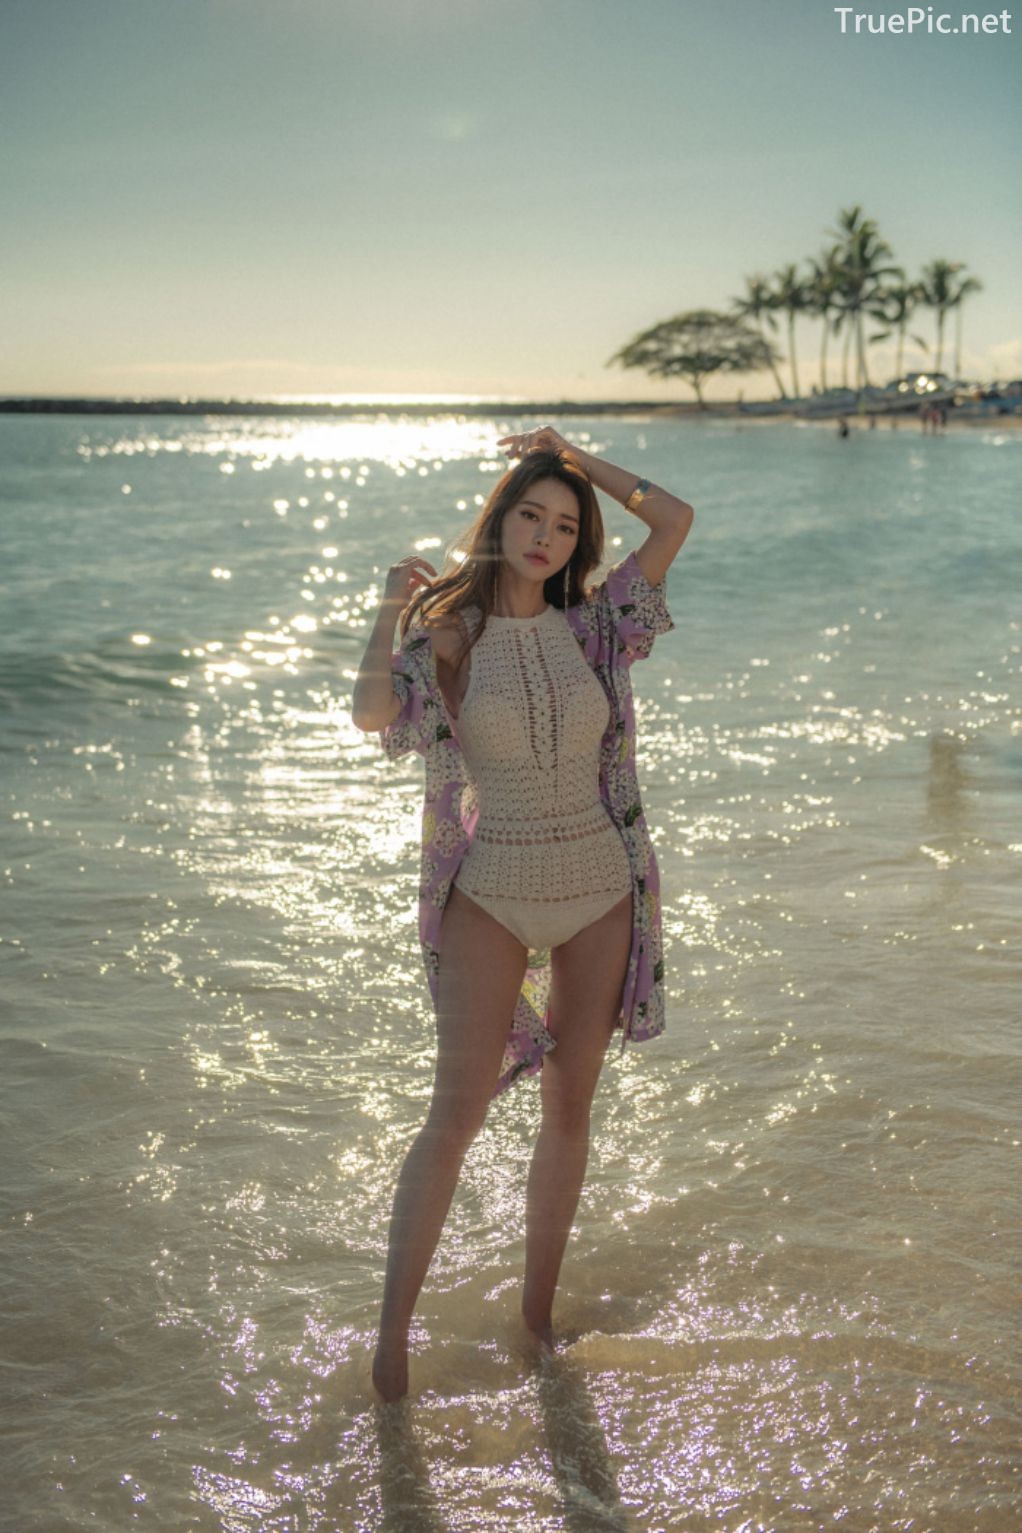 Korean Fashion Model - Kim Moon Hee as an Angel in Summer Swimsuit - TruePic.net - Picture 27